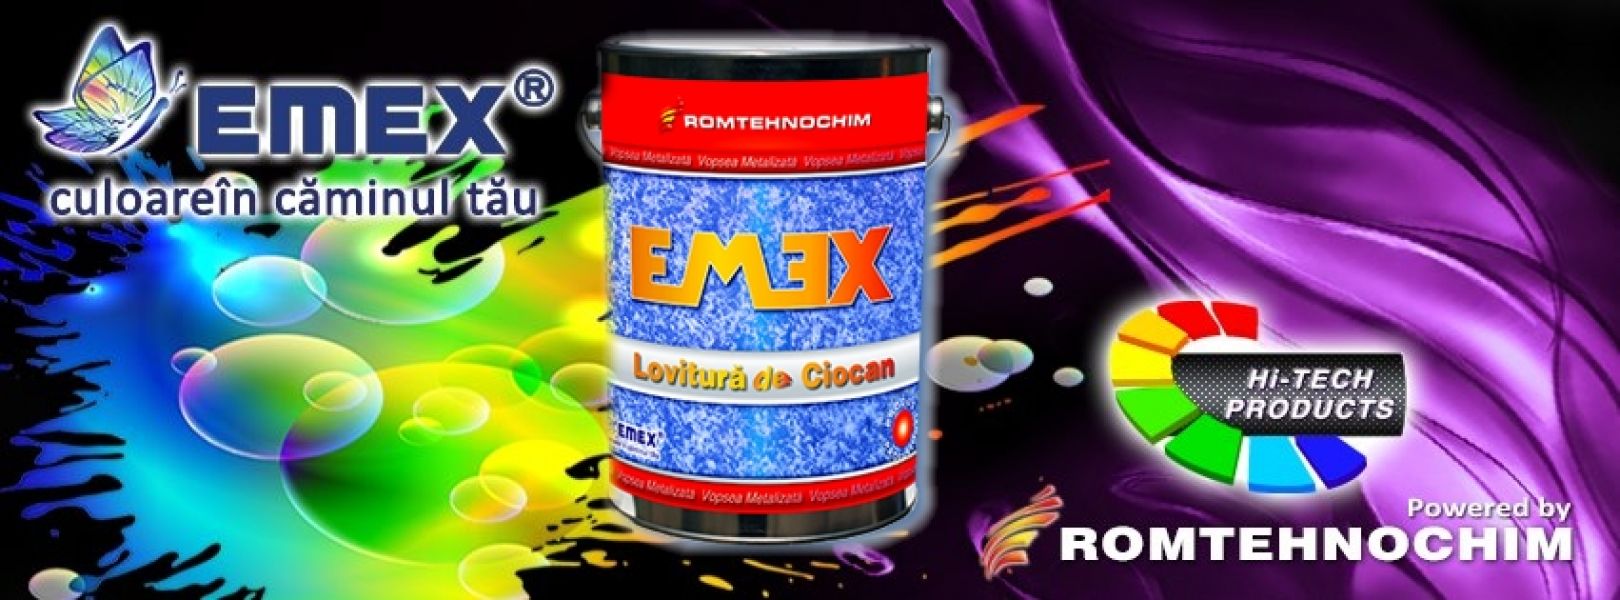 Vopsea Metalizata cu Efect Lovitura de Ciocan EMEX - 16.75  Ron/Kg